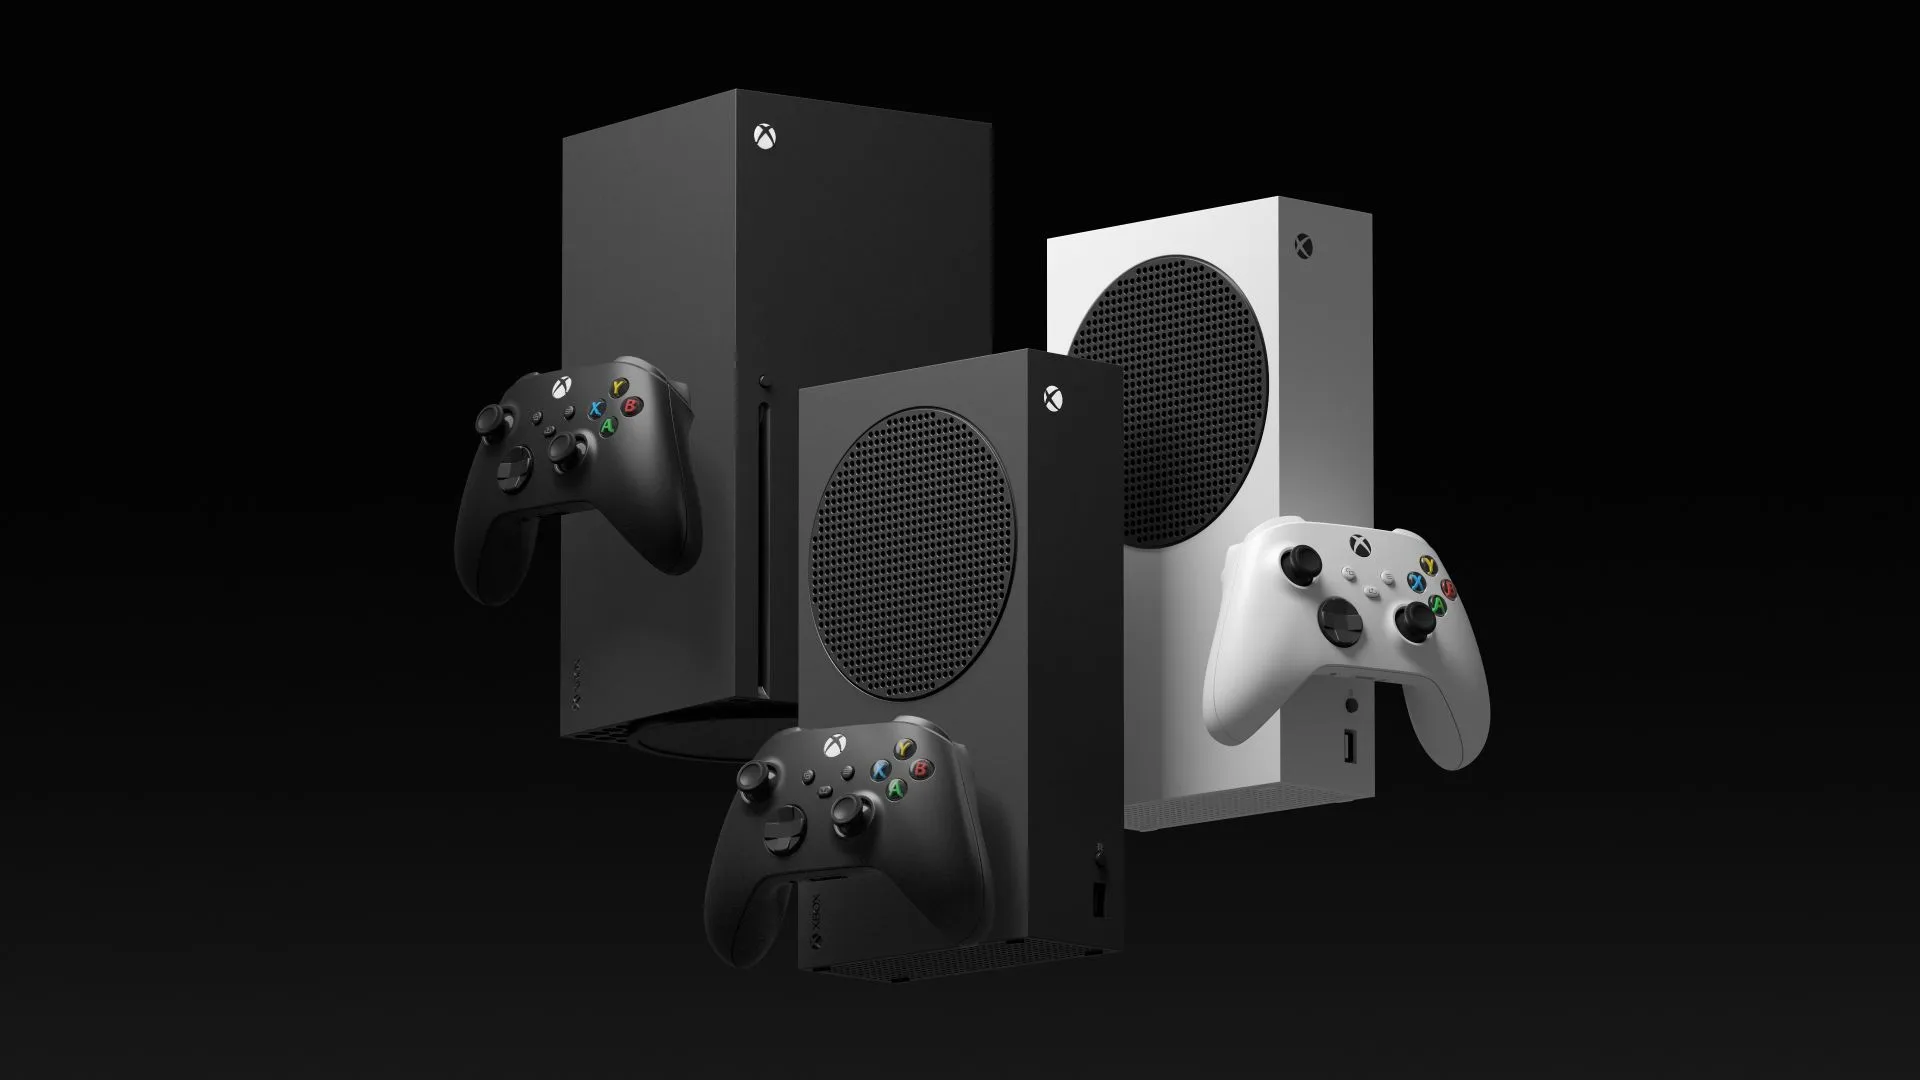 Conoce la consola Xbox Series S Carbon Black. #XboxShowcase 